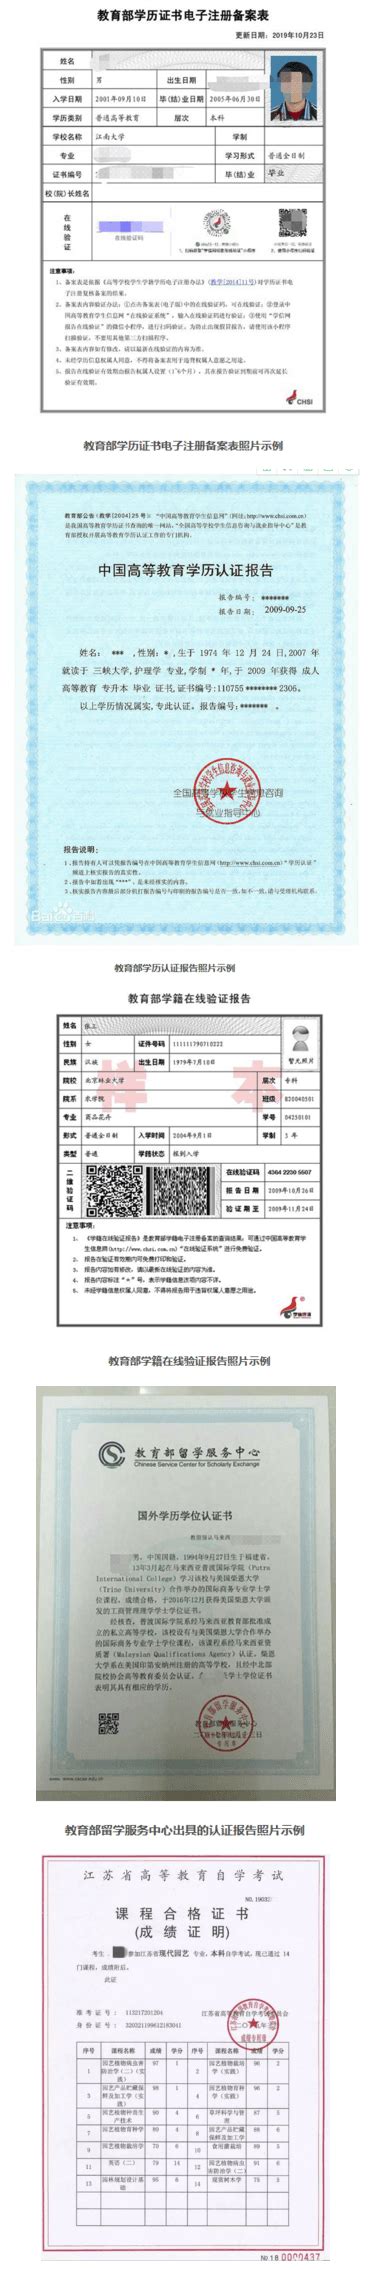 南京大学2020硕士研究生网上确认公告_考研_新东方在线